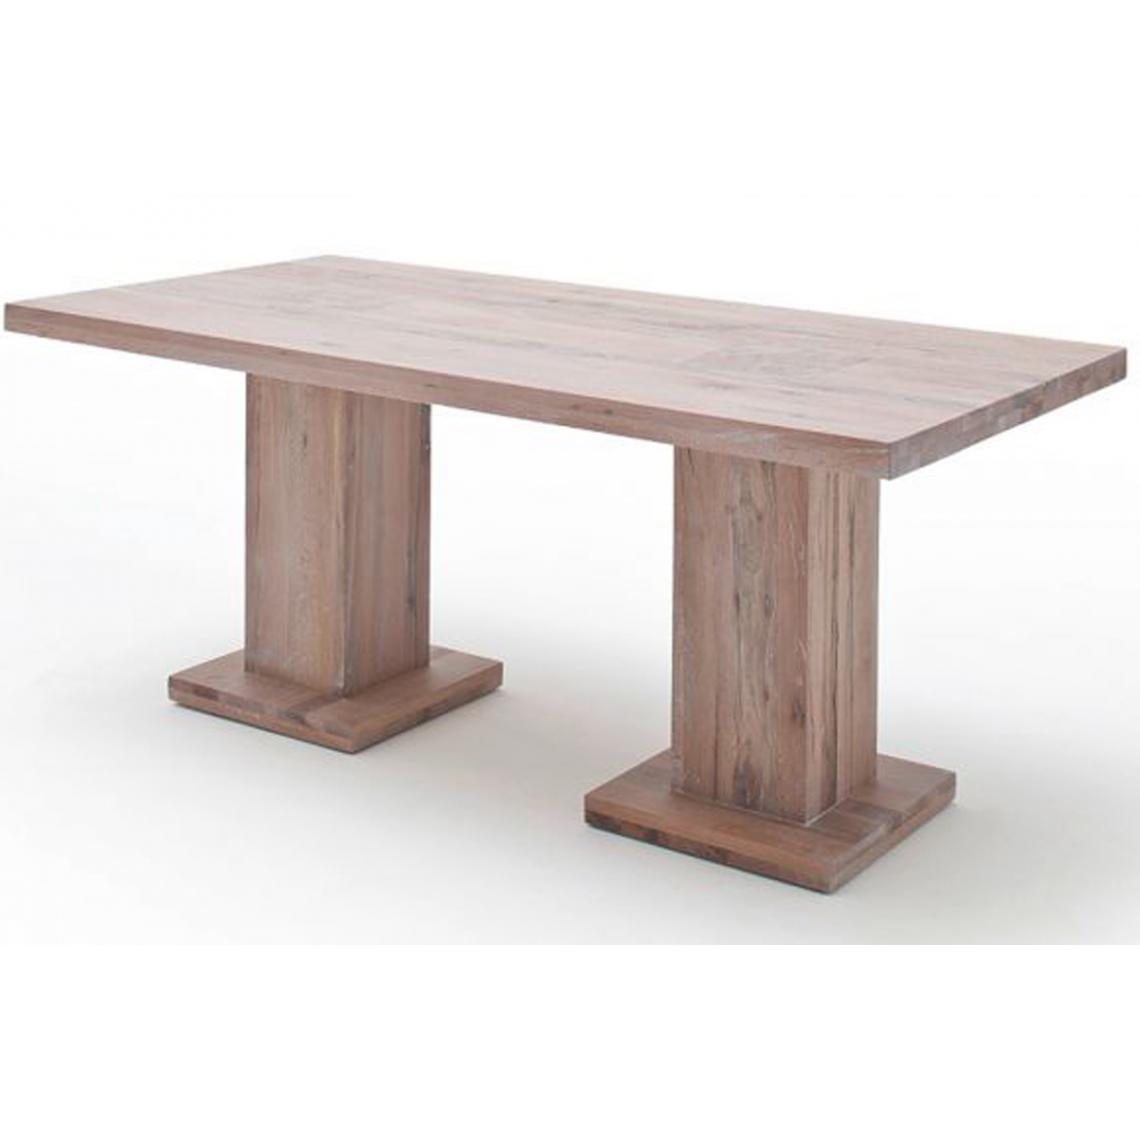 Pegane - Table à manger en chêne chaulé avec 2 colonnes - L.260 x H.76 x P.100 cm -PEGANE- - Tables à manger